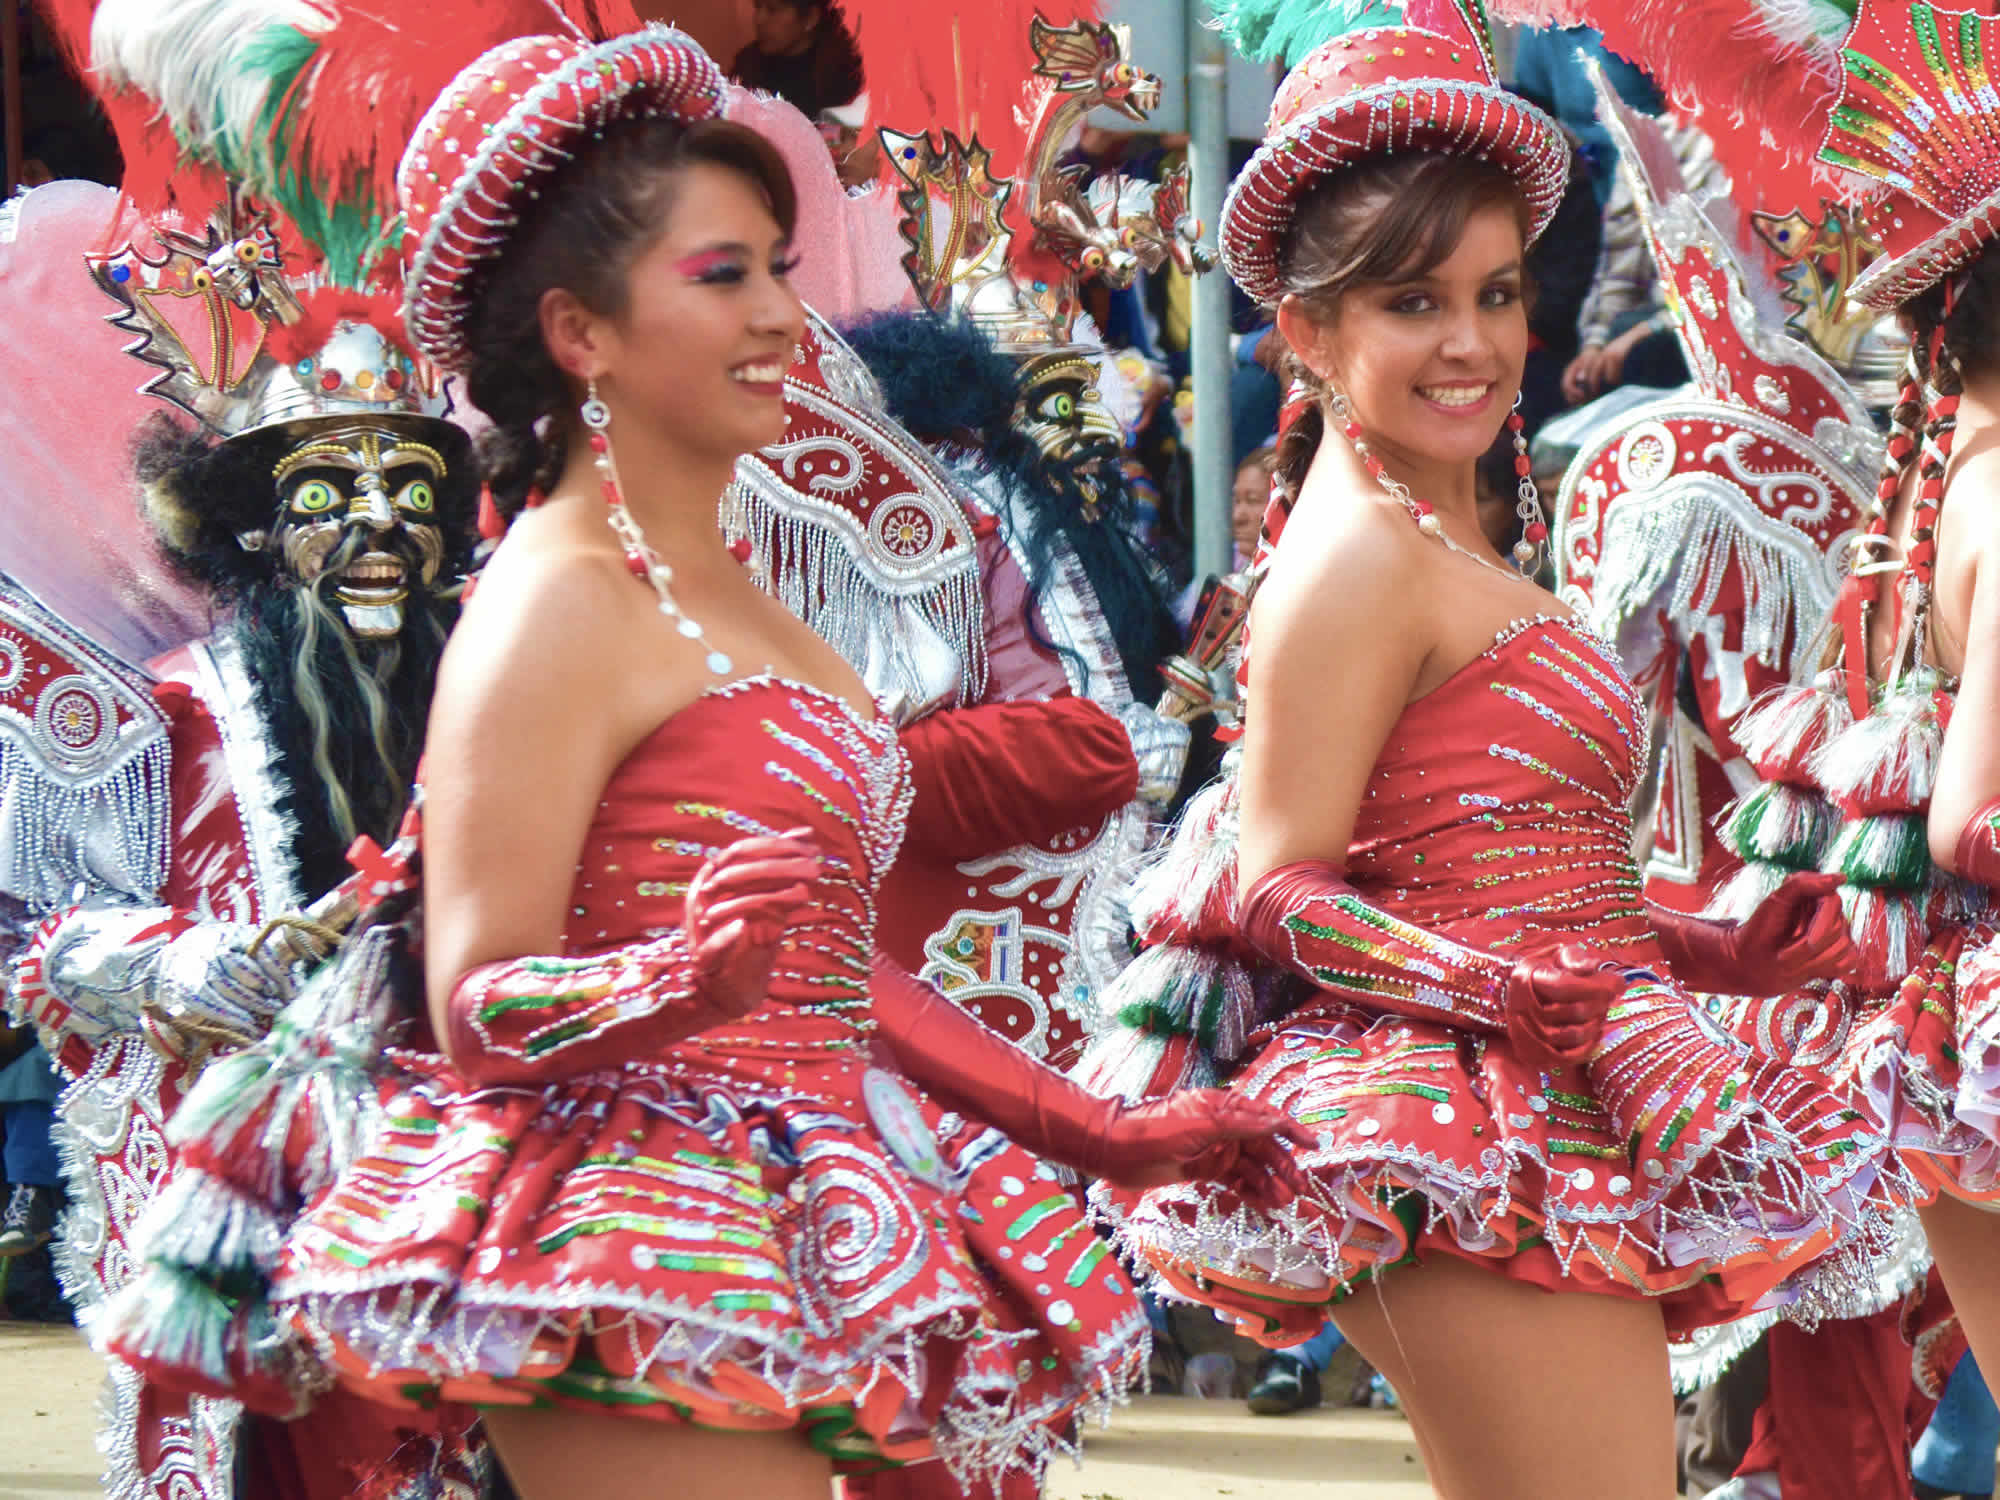 La Morenada - Oruro Carnival Dance